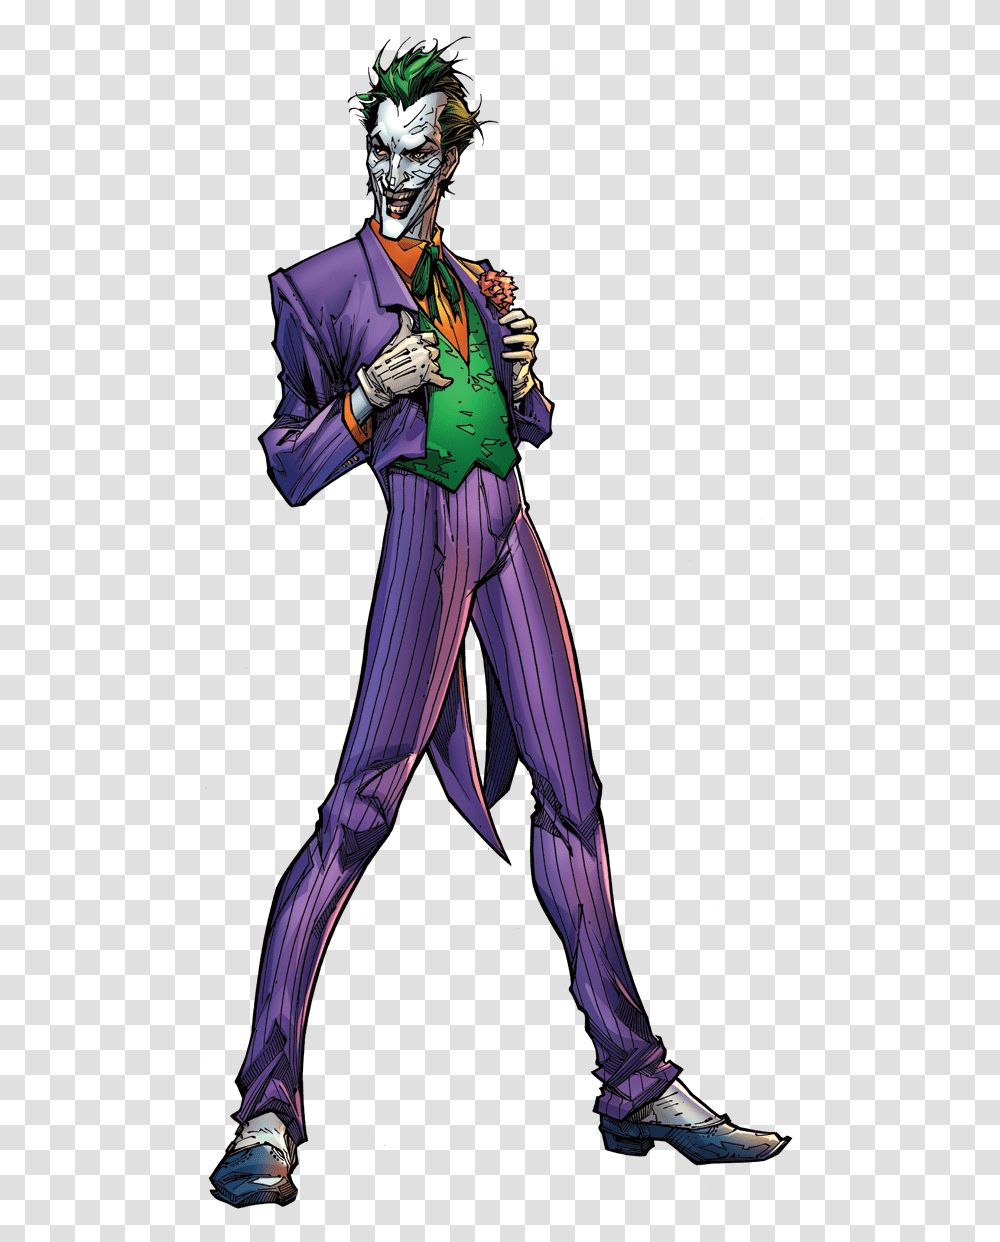 Cute Joker Background Joker Cartoon, Costume, Performer, Person, Human Transparent Png